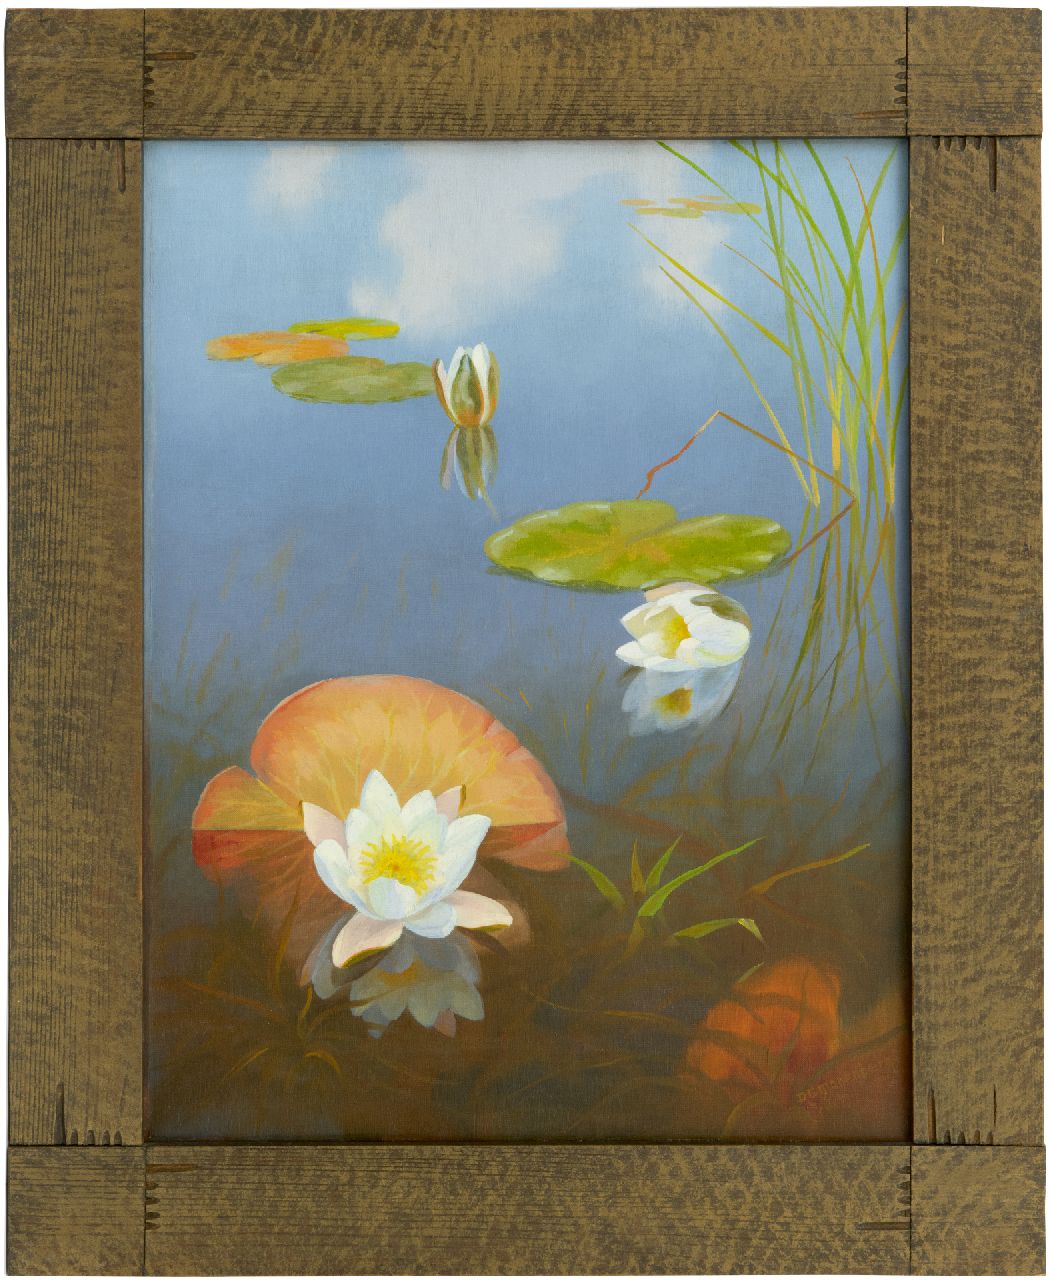 Smorenberg D.  | Dirk Smorenberg | Schilderijen te koop aangeboden | Waterlelies in de Loosdrechtse Plassen, olieverf op doek 54,2 x 41,3 cm, gesigneerd rechtsonder